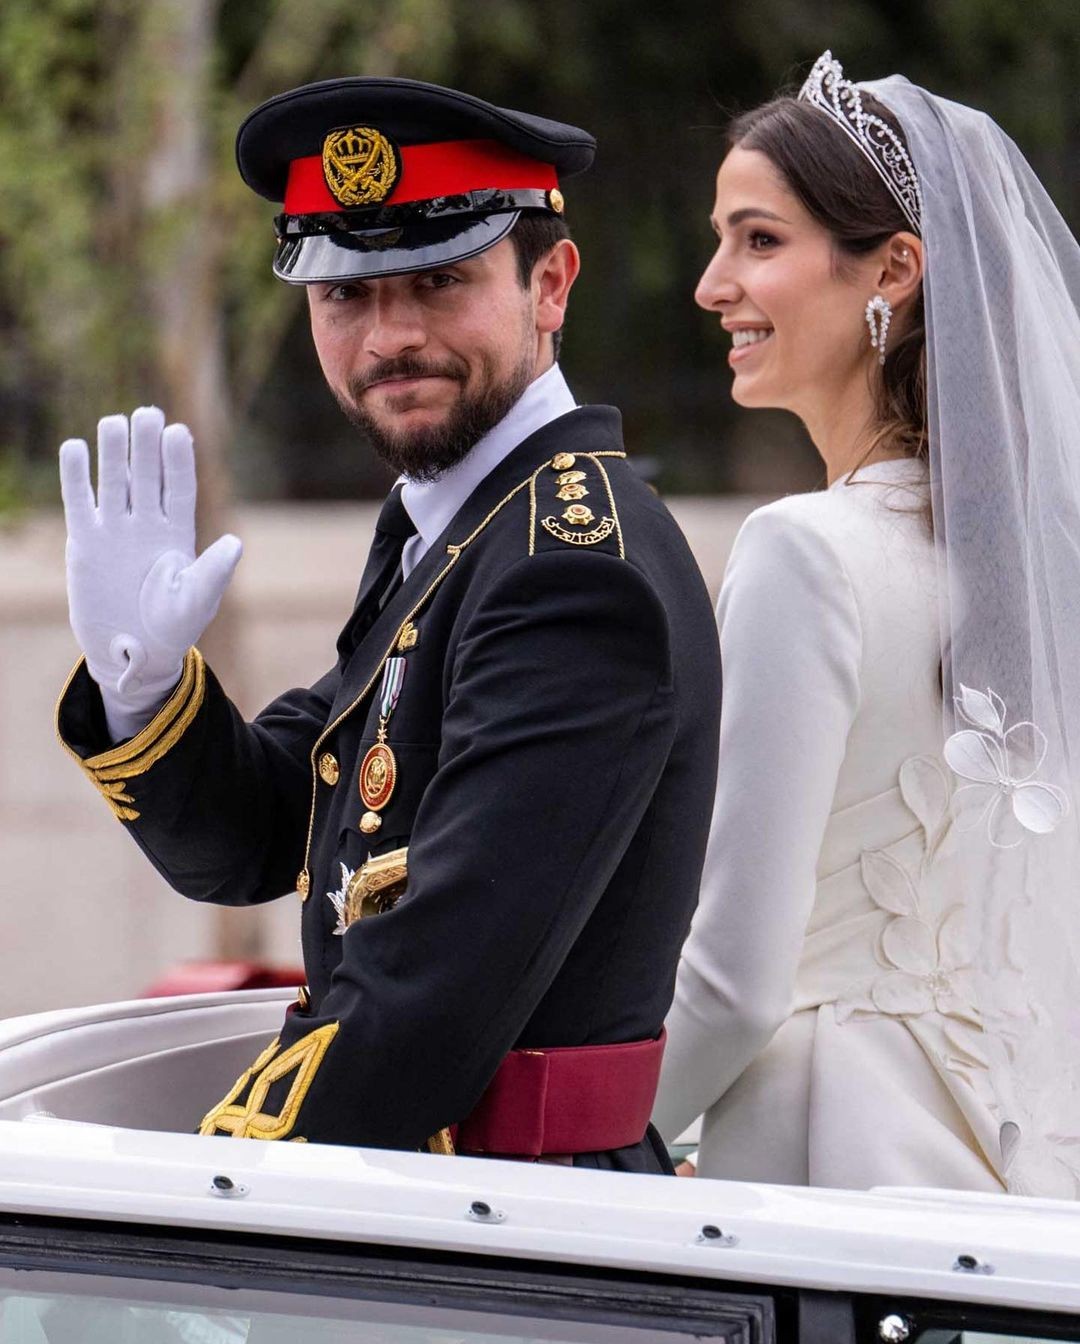 Nhan sắc con gái tỷ phú vừa kết hôn với Thái tử Jordan - Ảnh 2.